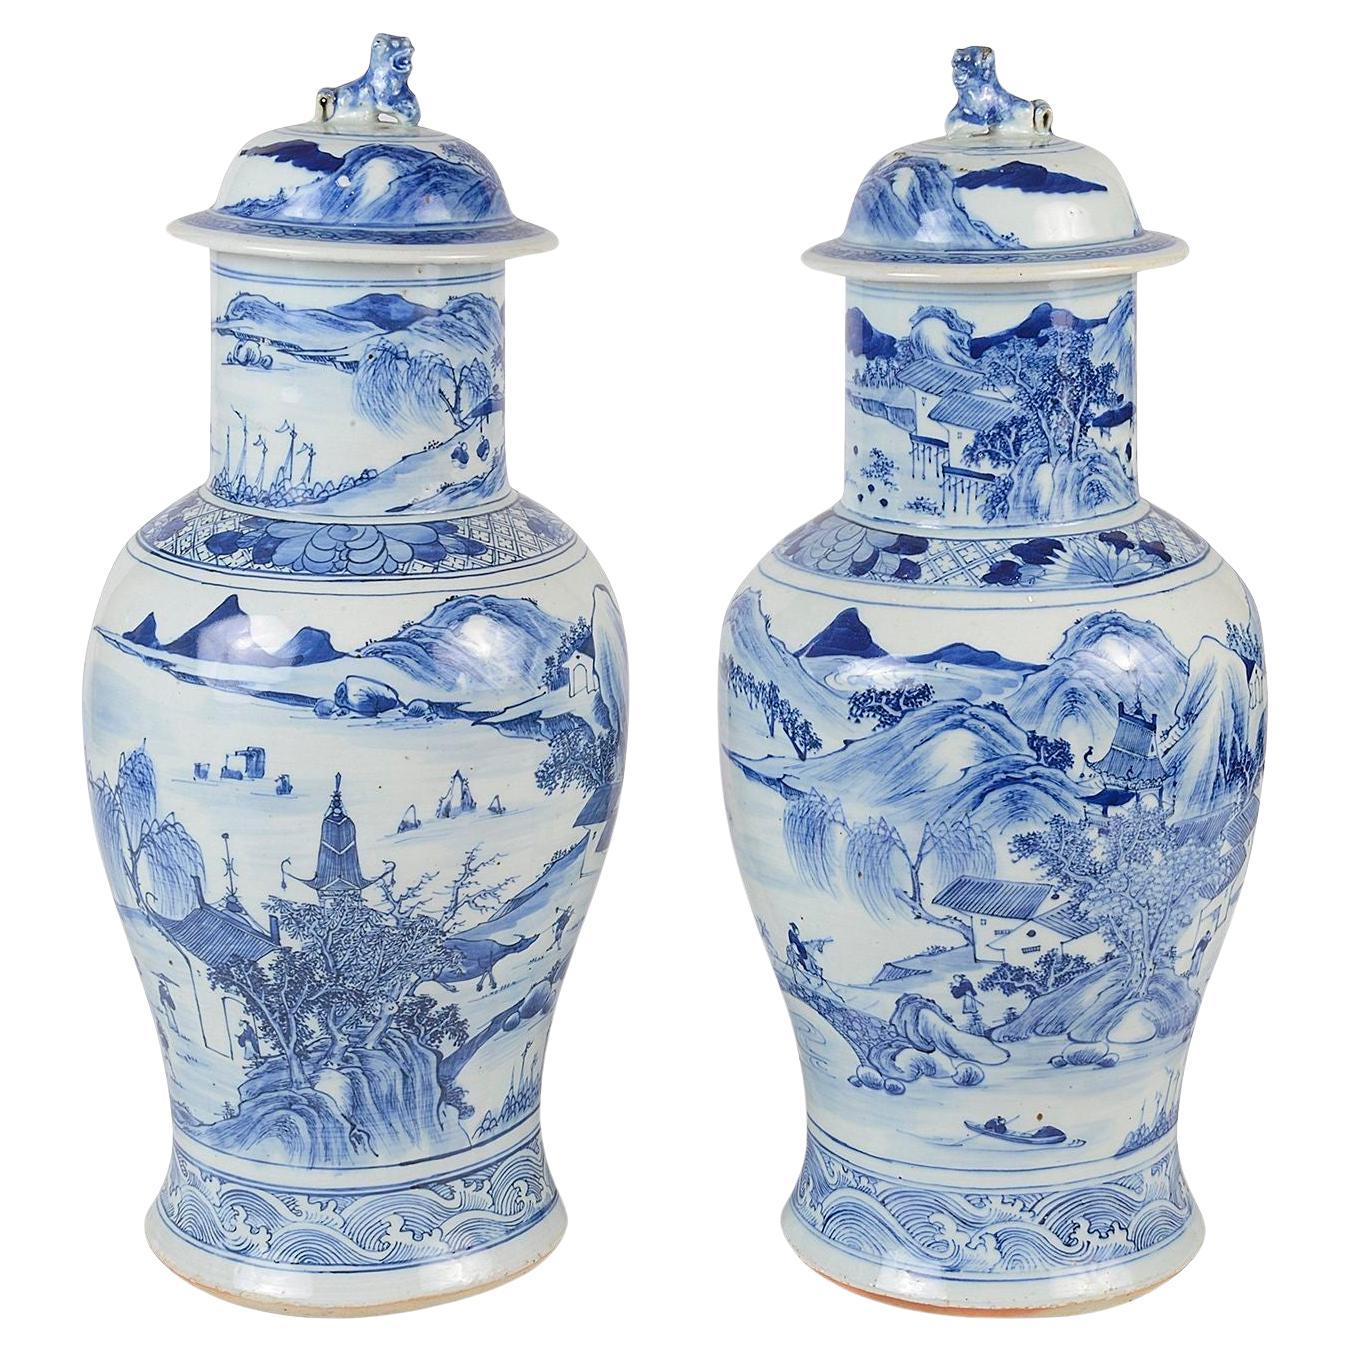 Paire de vases chinois du 19ème siècle à couvercle bleu et blanc.